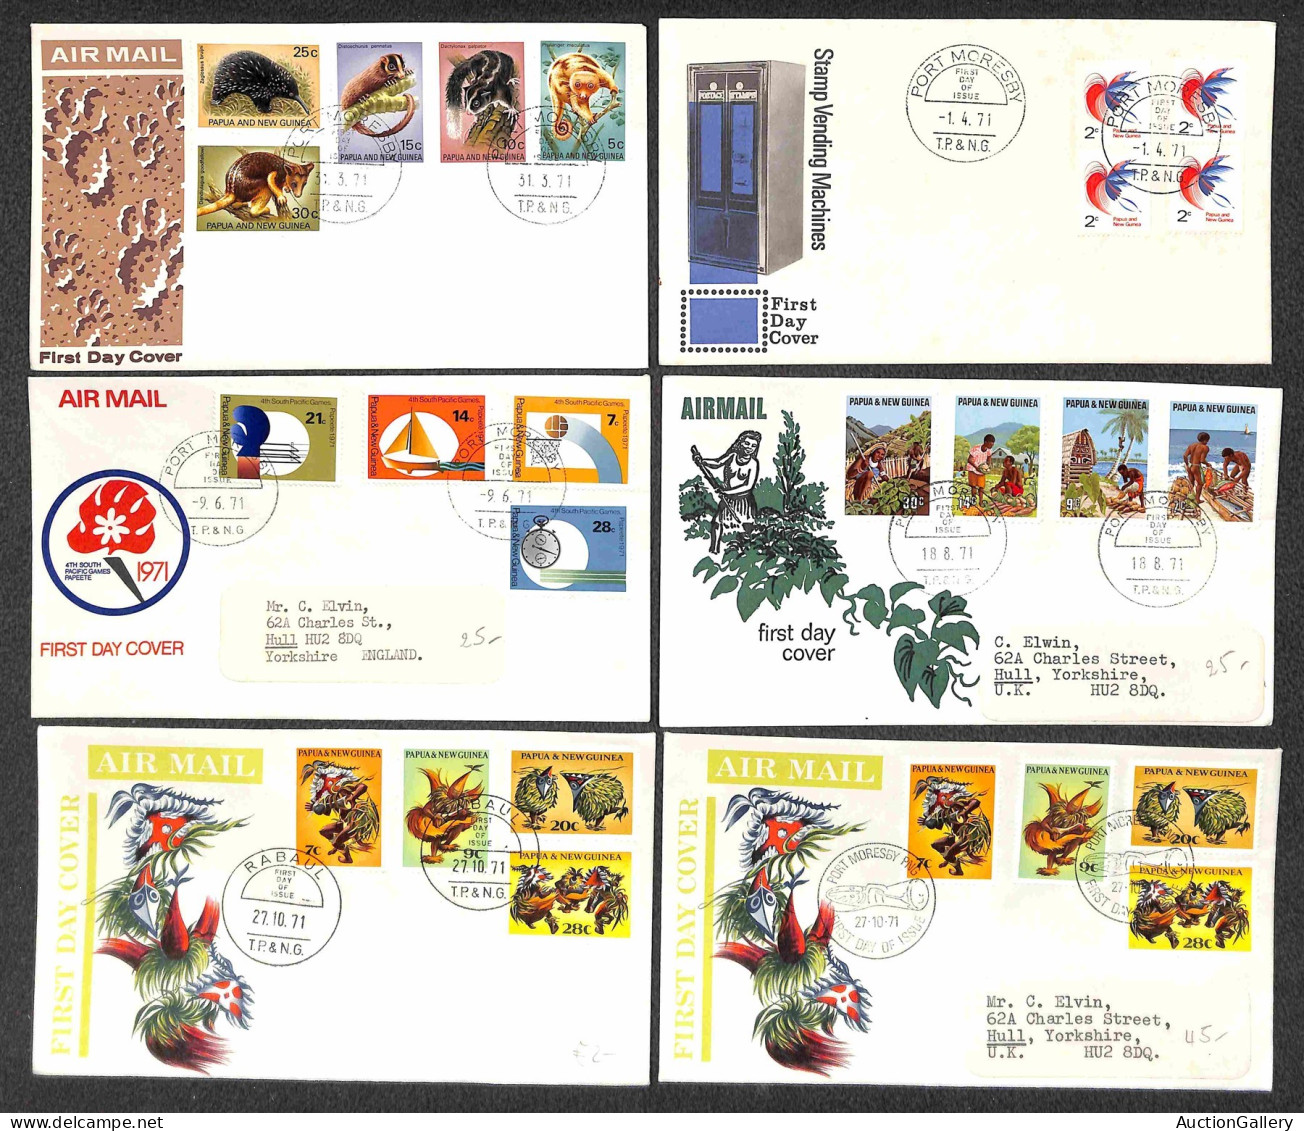 Lotti&Collezioni - Europa&Oltremare - PAPUA NUOVA GUINEA - 1965/1987 - Collezione di 150 FDC del periodo - pochissime ma